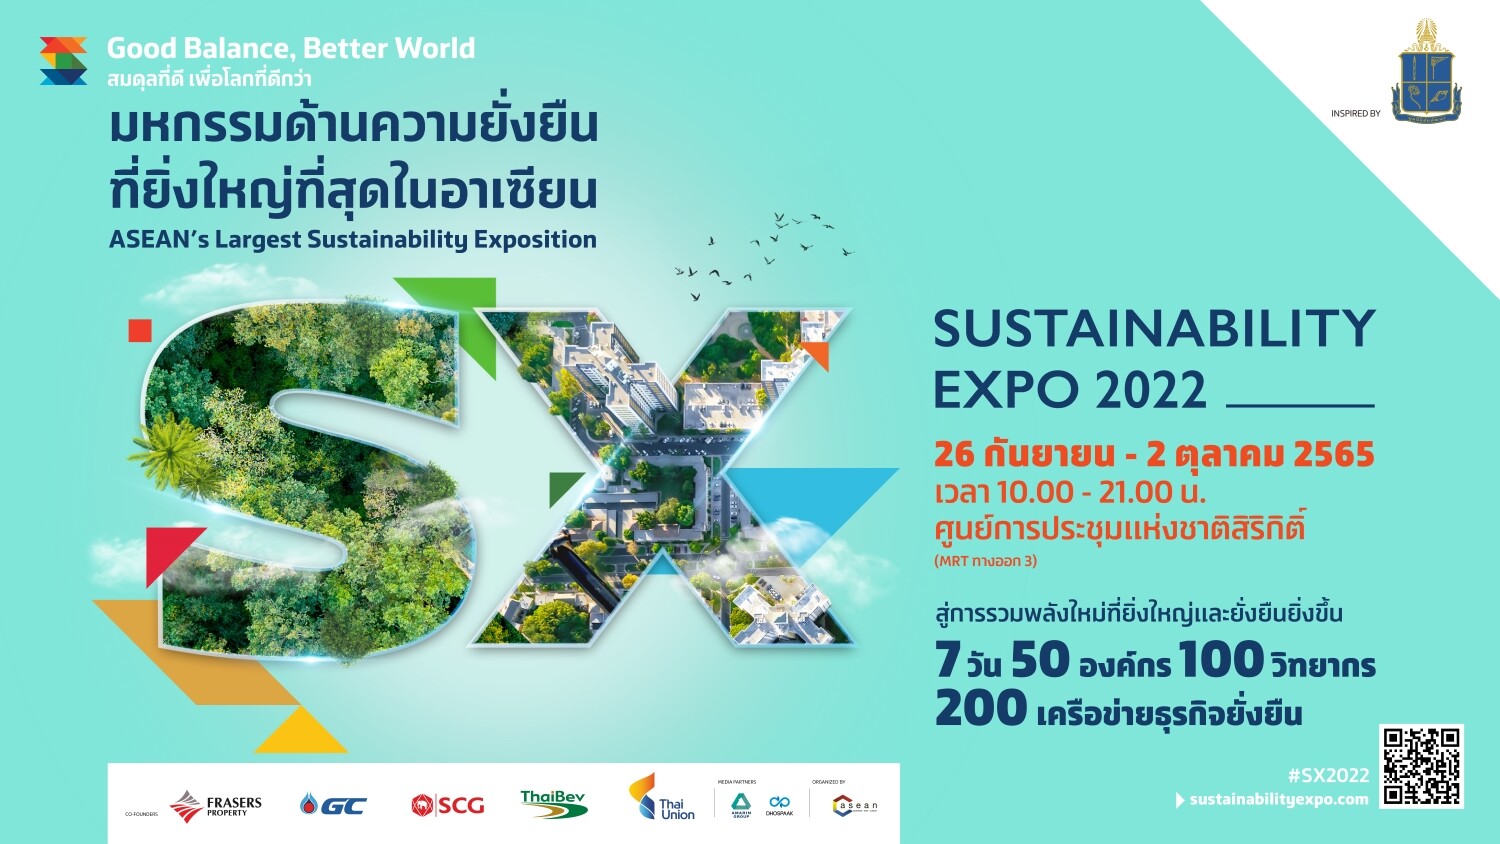 "เฟรเซอร์ส พร็อพเพอร์ตี้" ชู One Bangkok โครงการต้นแบบสีเขียวระดับโลก  ในงาน Sustainability Expo 2022